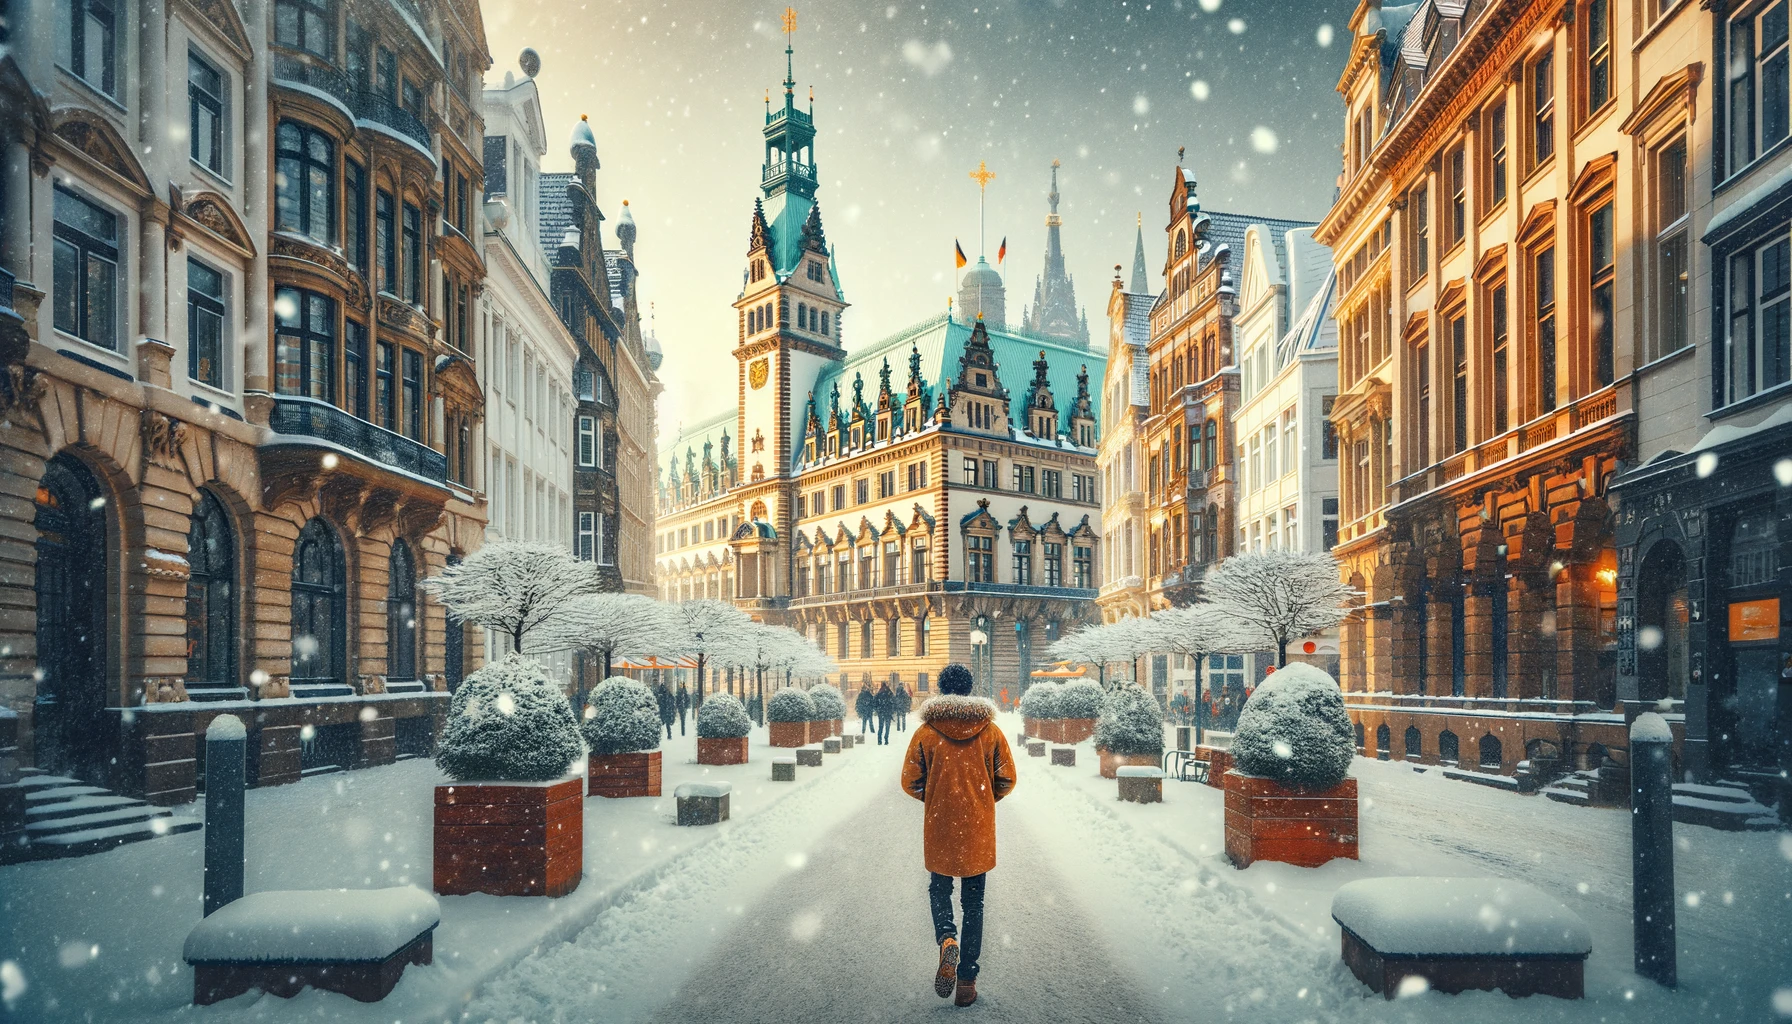 Malownicza zimowa sceneria w Hamburgu, z osobą w ciepłym ubraniu spacerującą po miejskich ulicach z zabytkowymi budynkami pokrytymi śniegiem